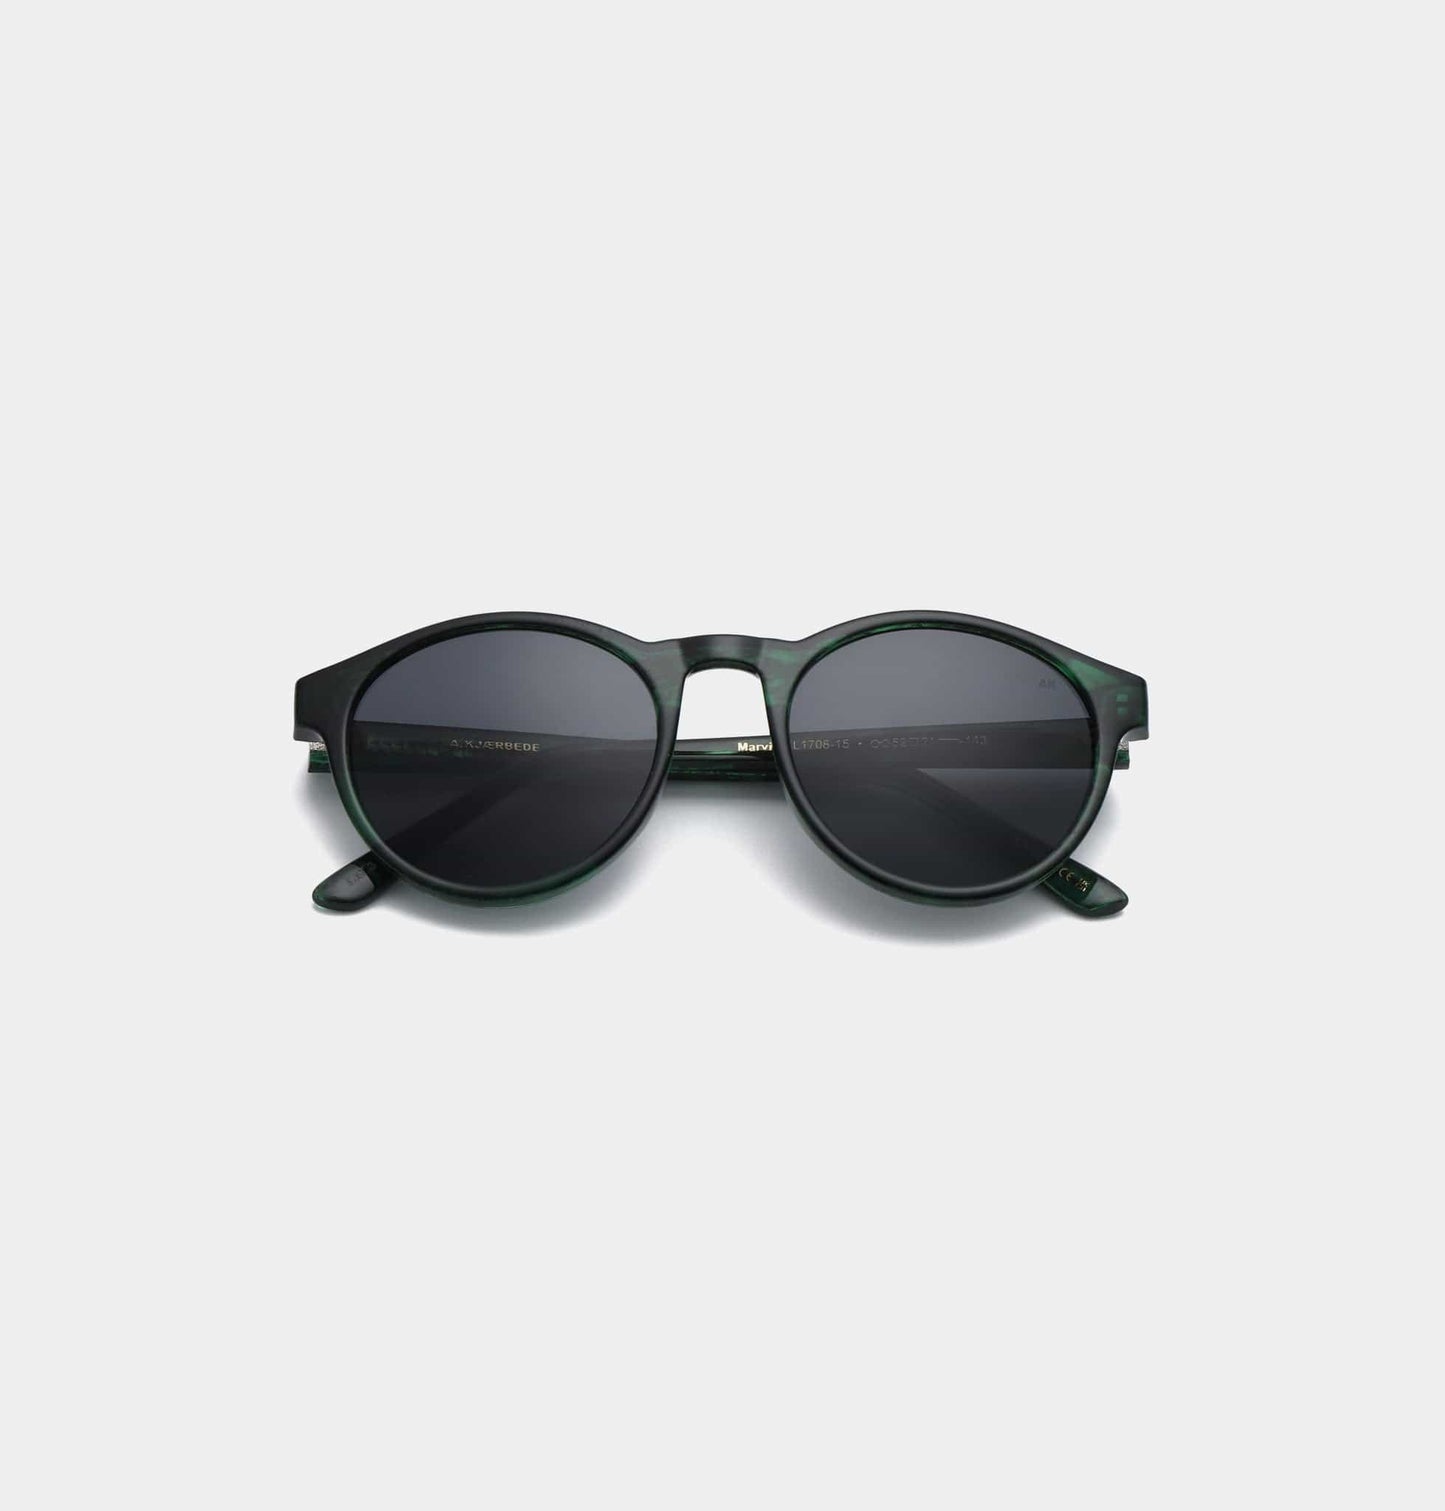 A.Kjaerbede Green Marble Transparent Marvin Sunglasses